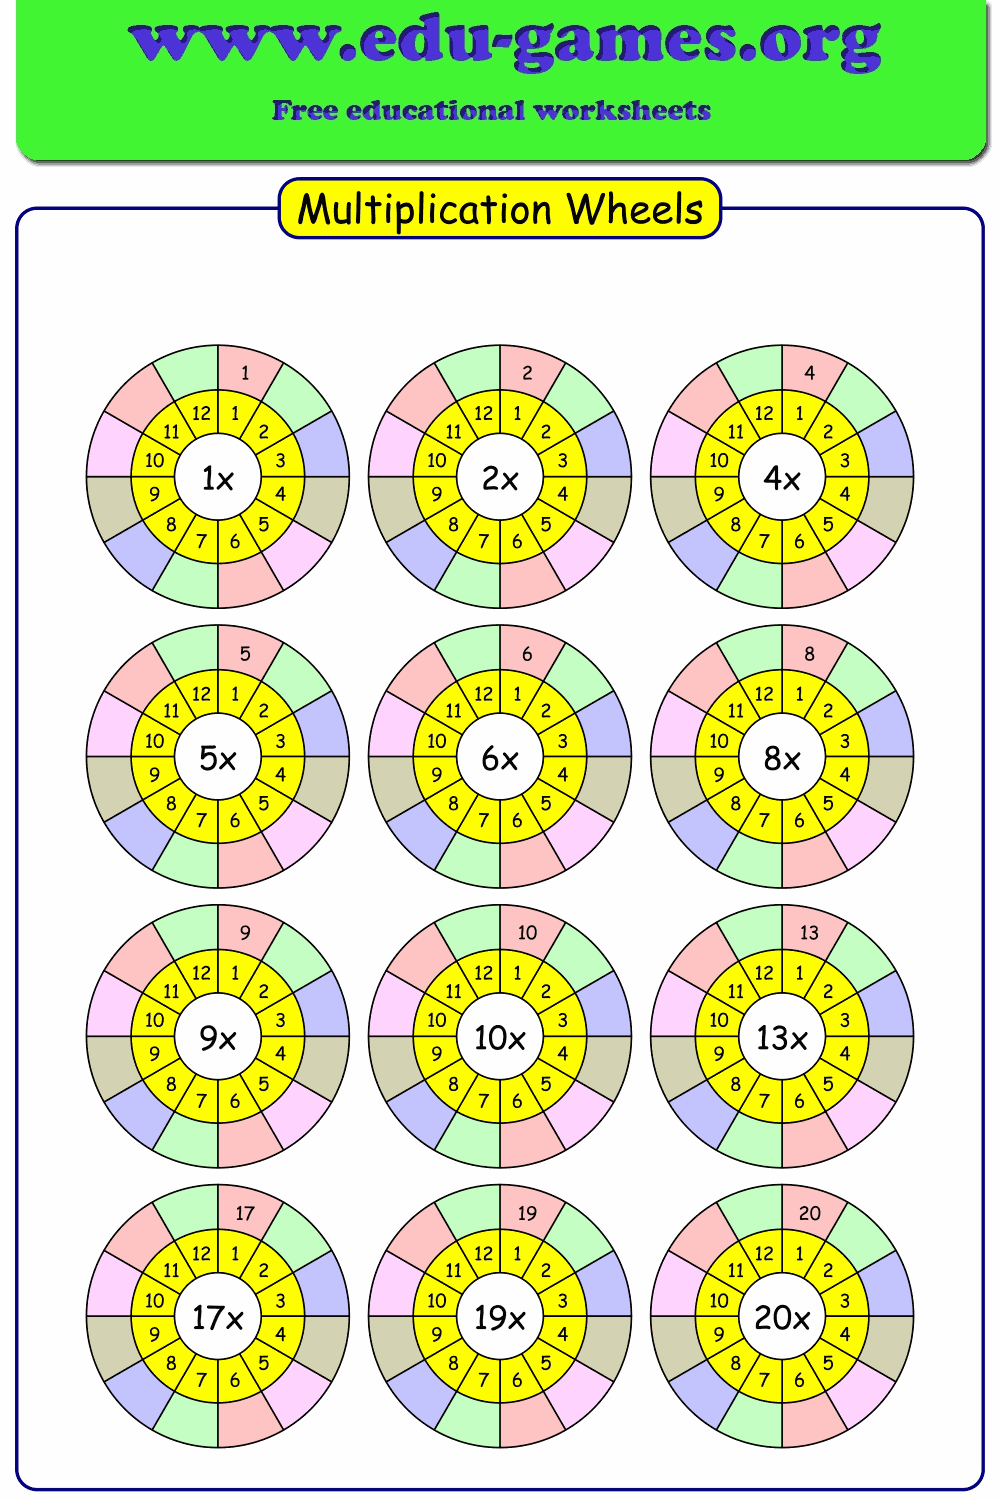 Multiplication wheels free printable worksheet makers